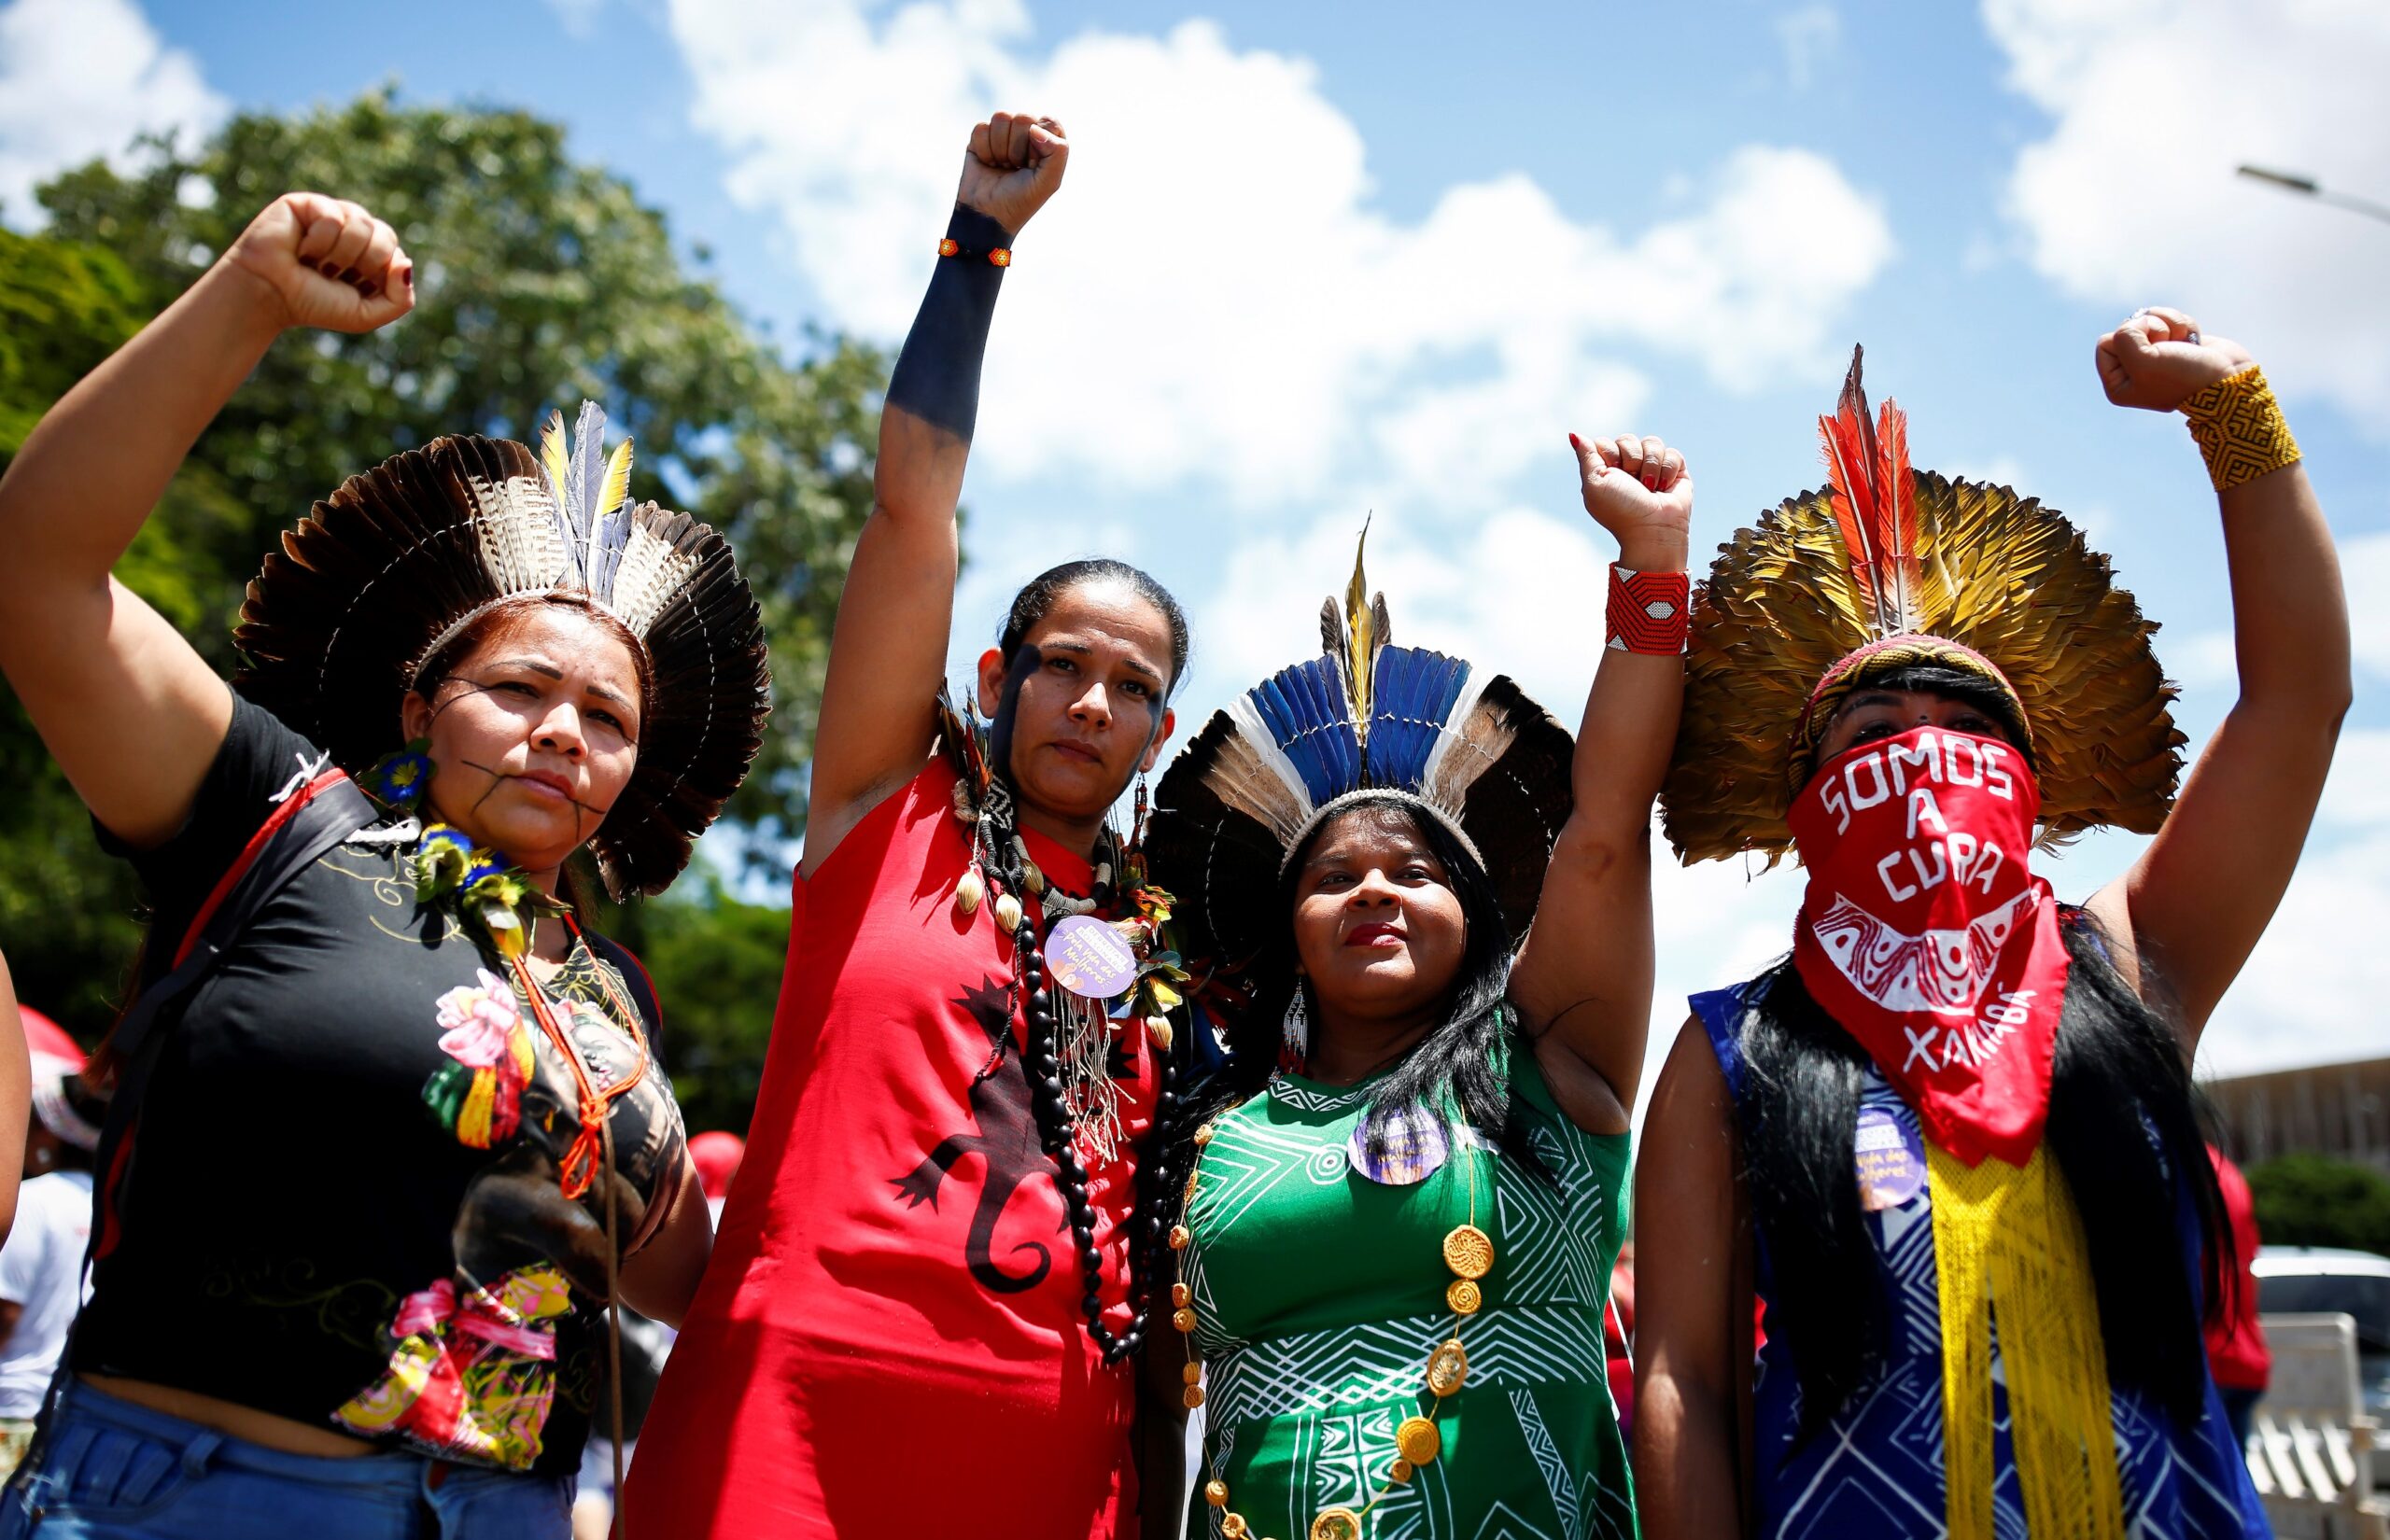 ブラジルのボルソナロ大統領が 先住民族功労賞 を受賞 アマゾン開発を推進する大統領の受賞に先住民族激怒